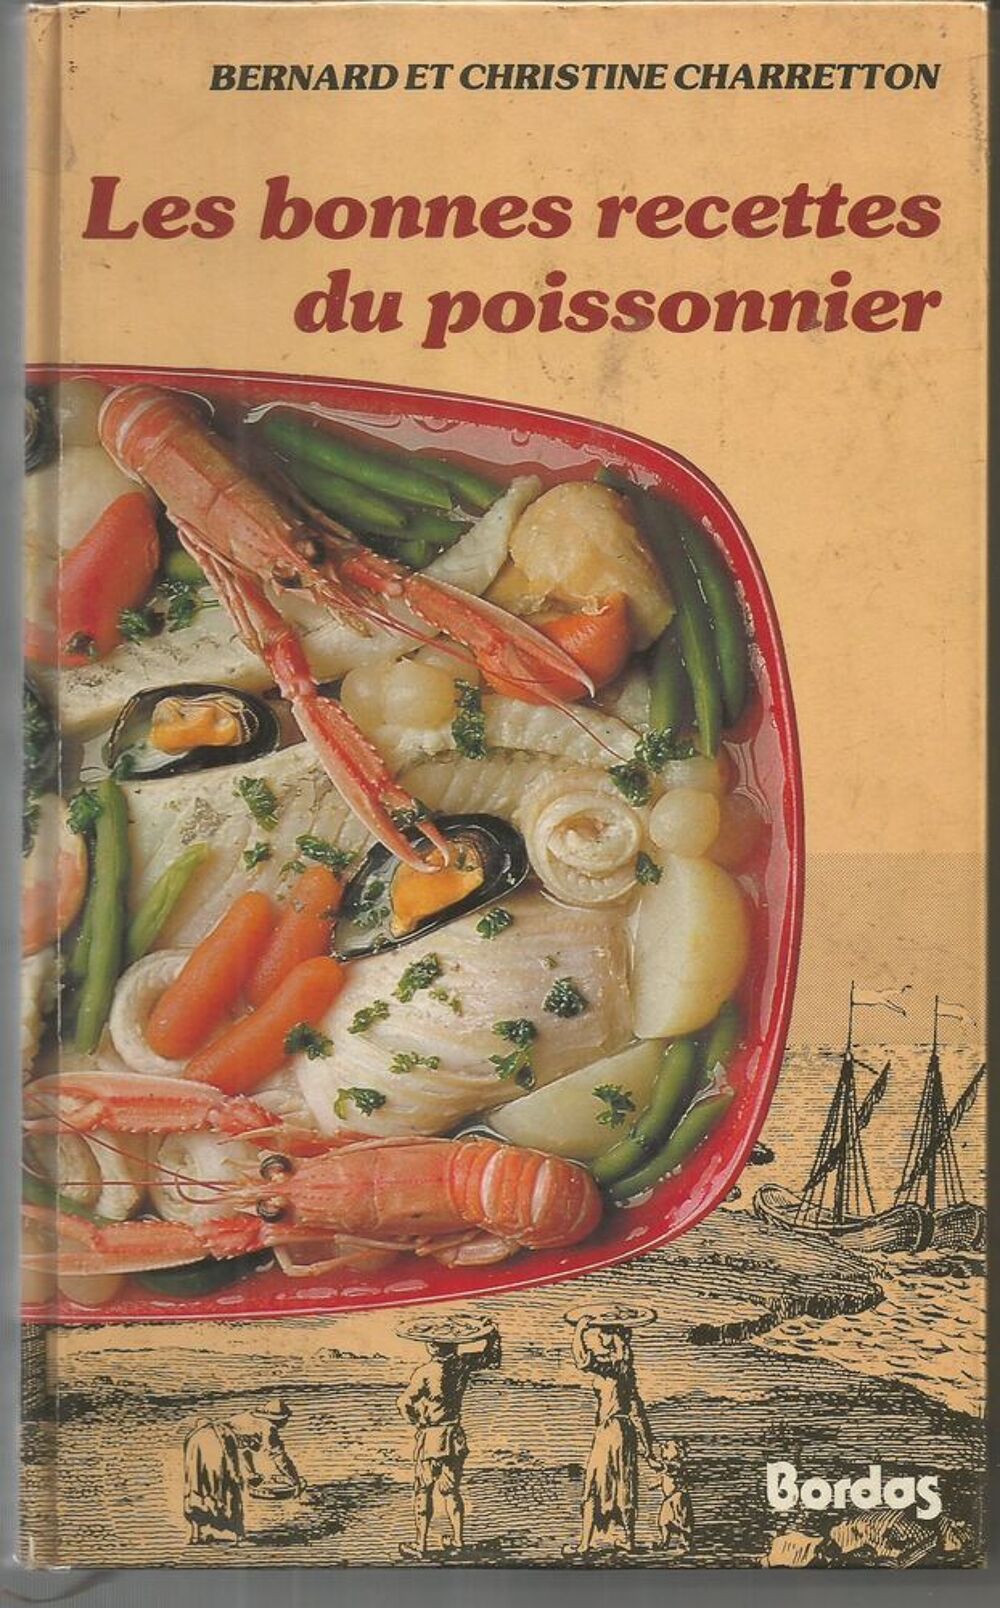  Les bonnes recettes du poissonnier Livres et BD